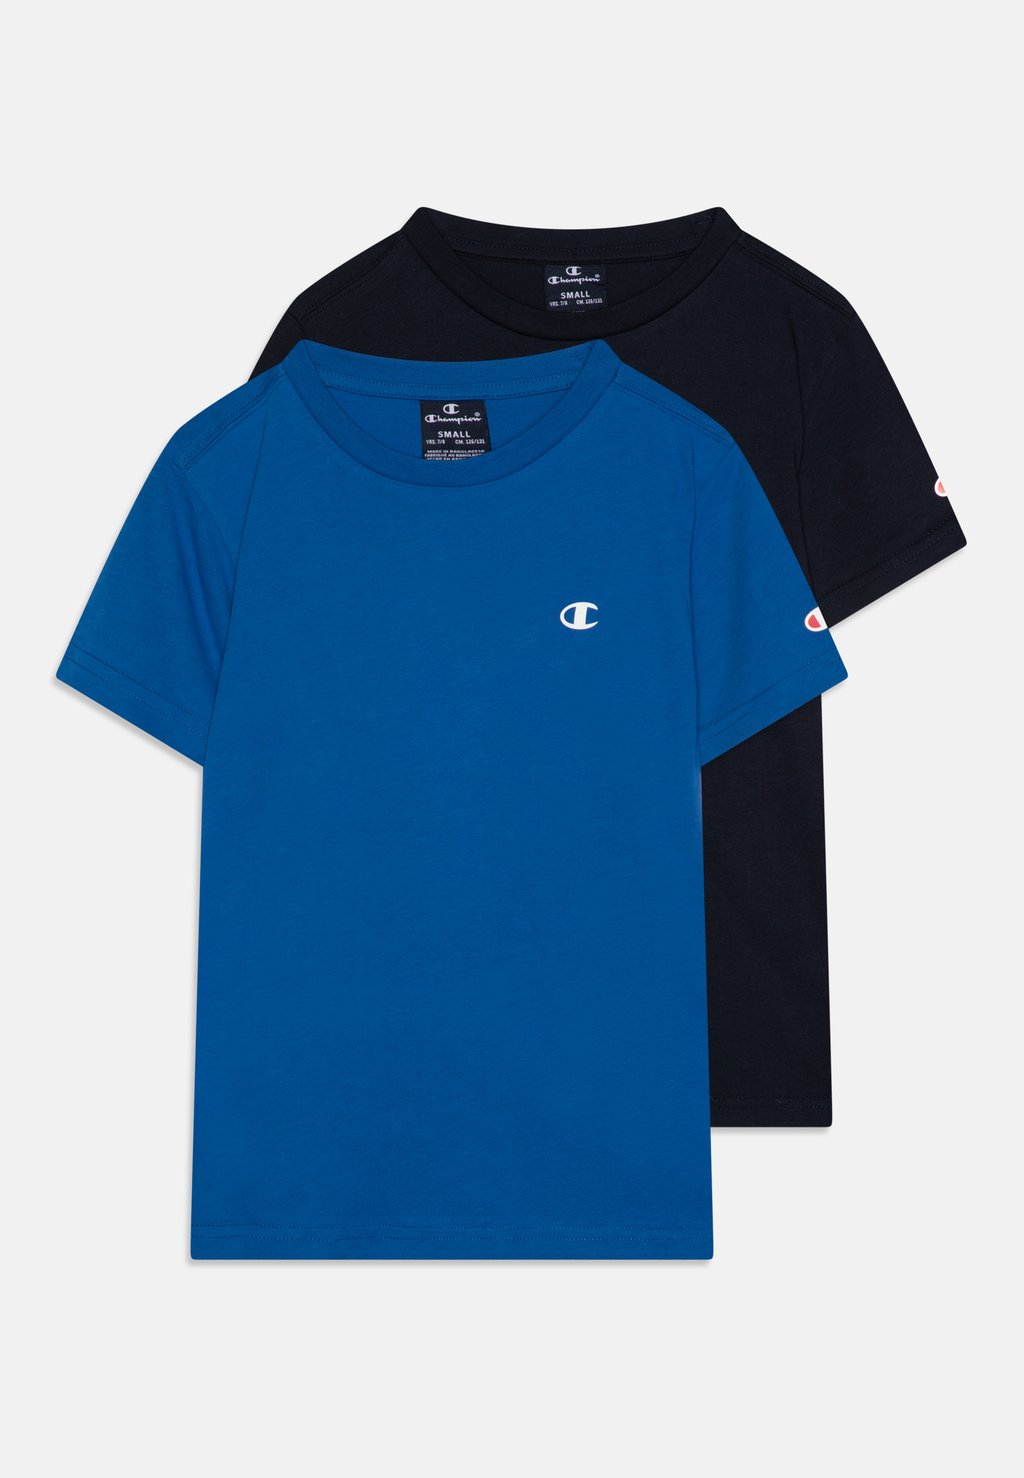 футболка базовая unisex 5 pack friboo цвет dark blue red blue Базовая футболка Crew Neck Unisex 2 Pack Champion, цвет blue/dark blue